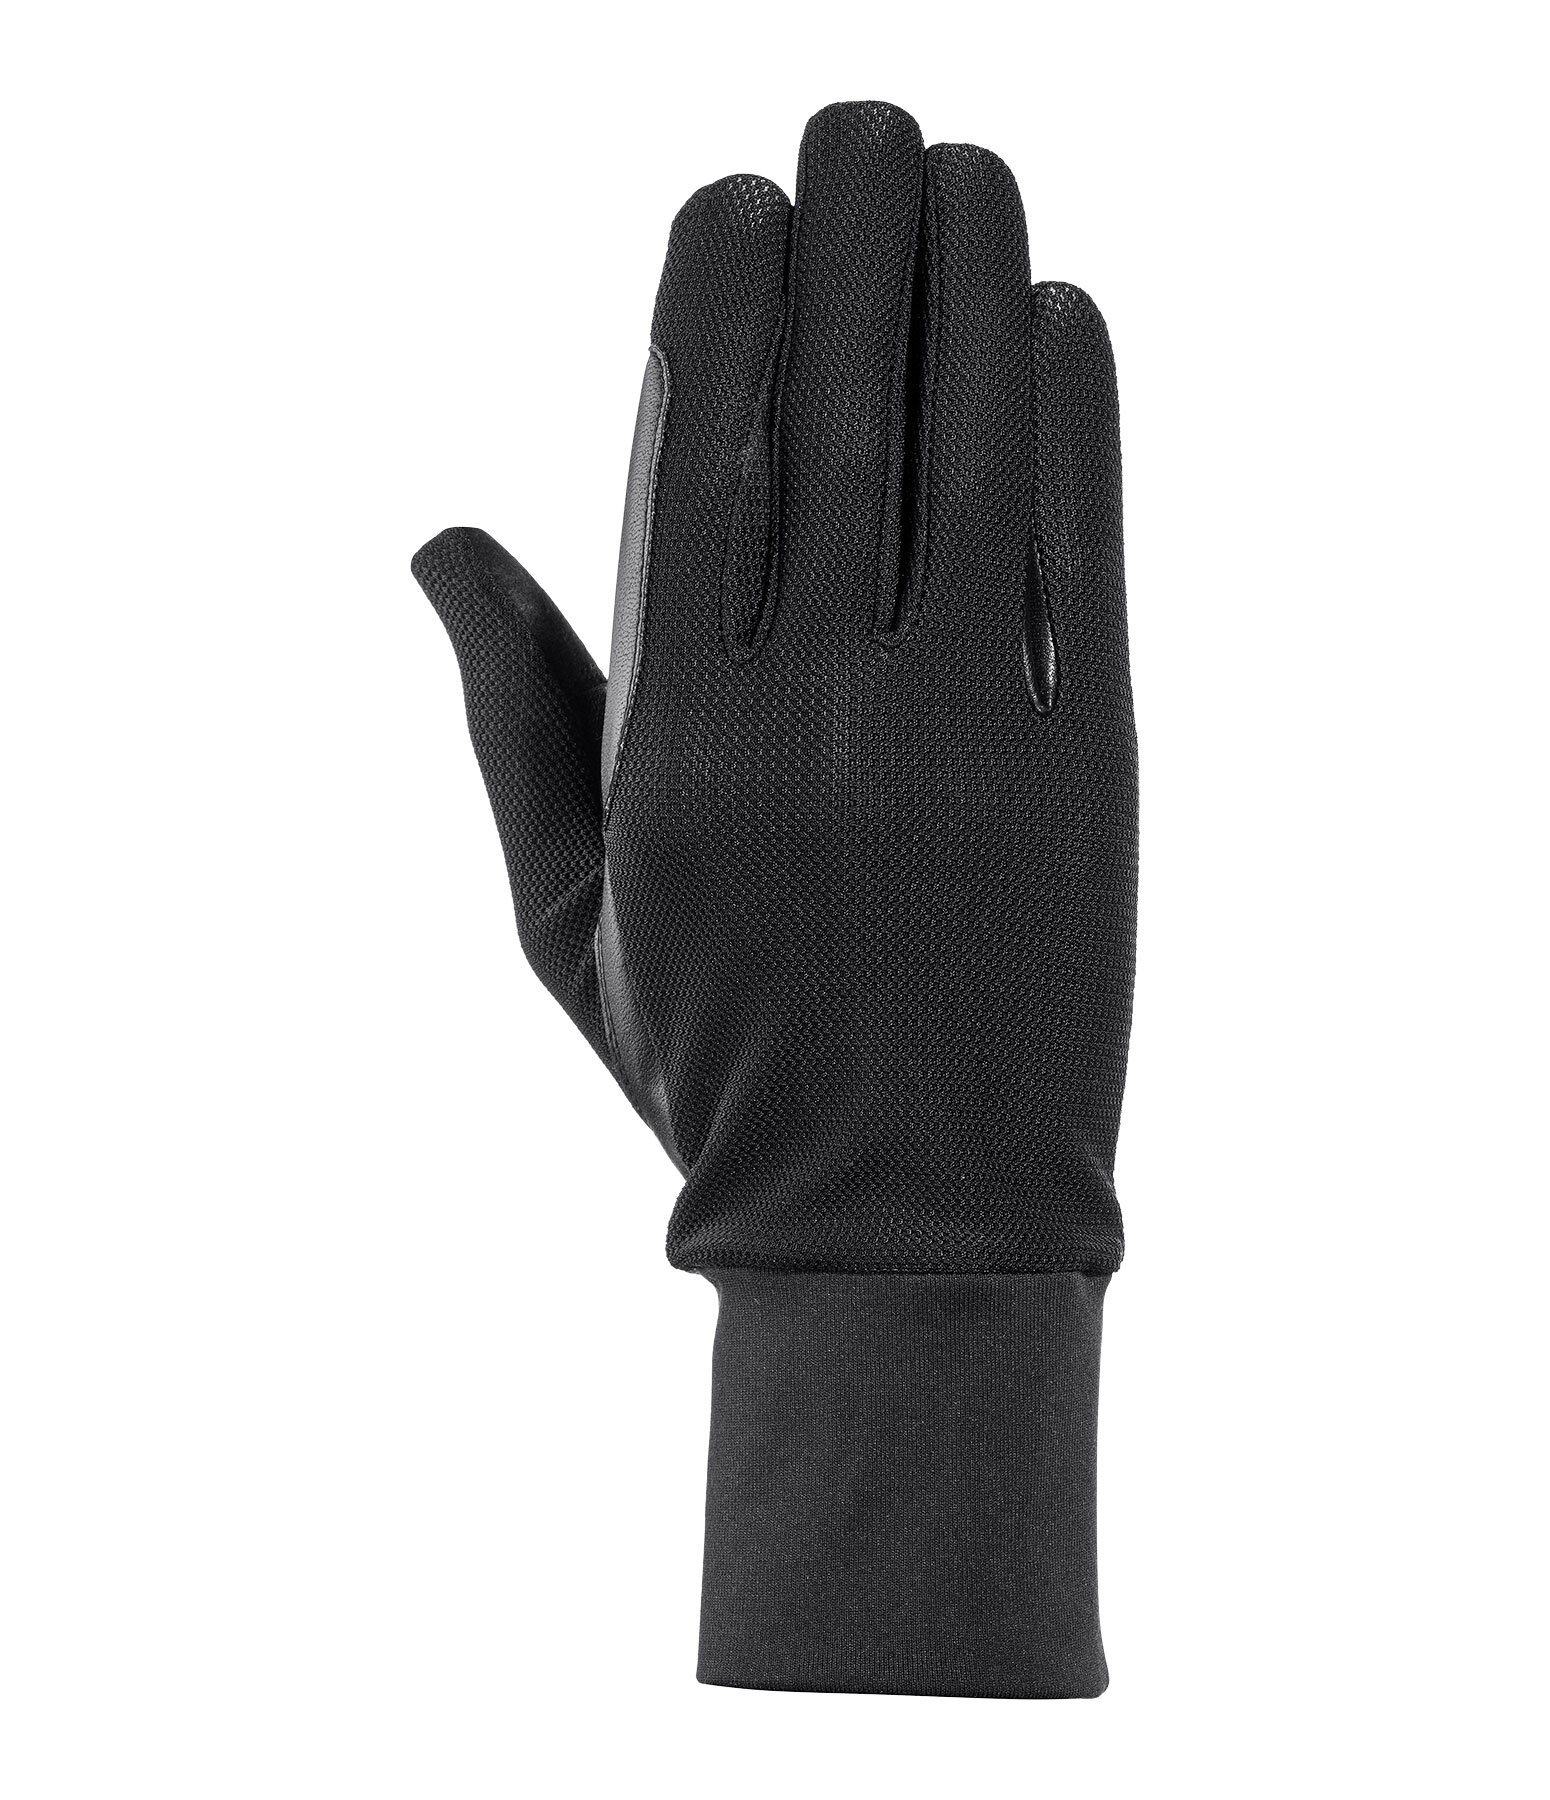 All-Season handschoenen Joelene